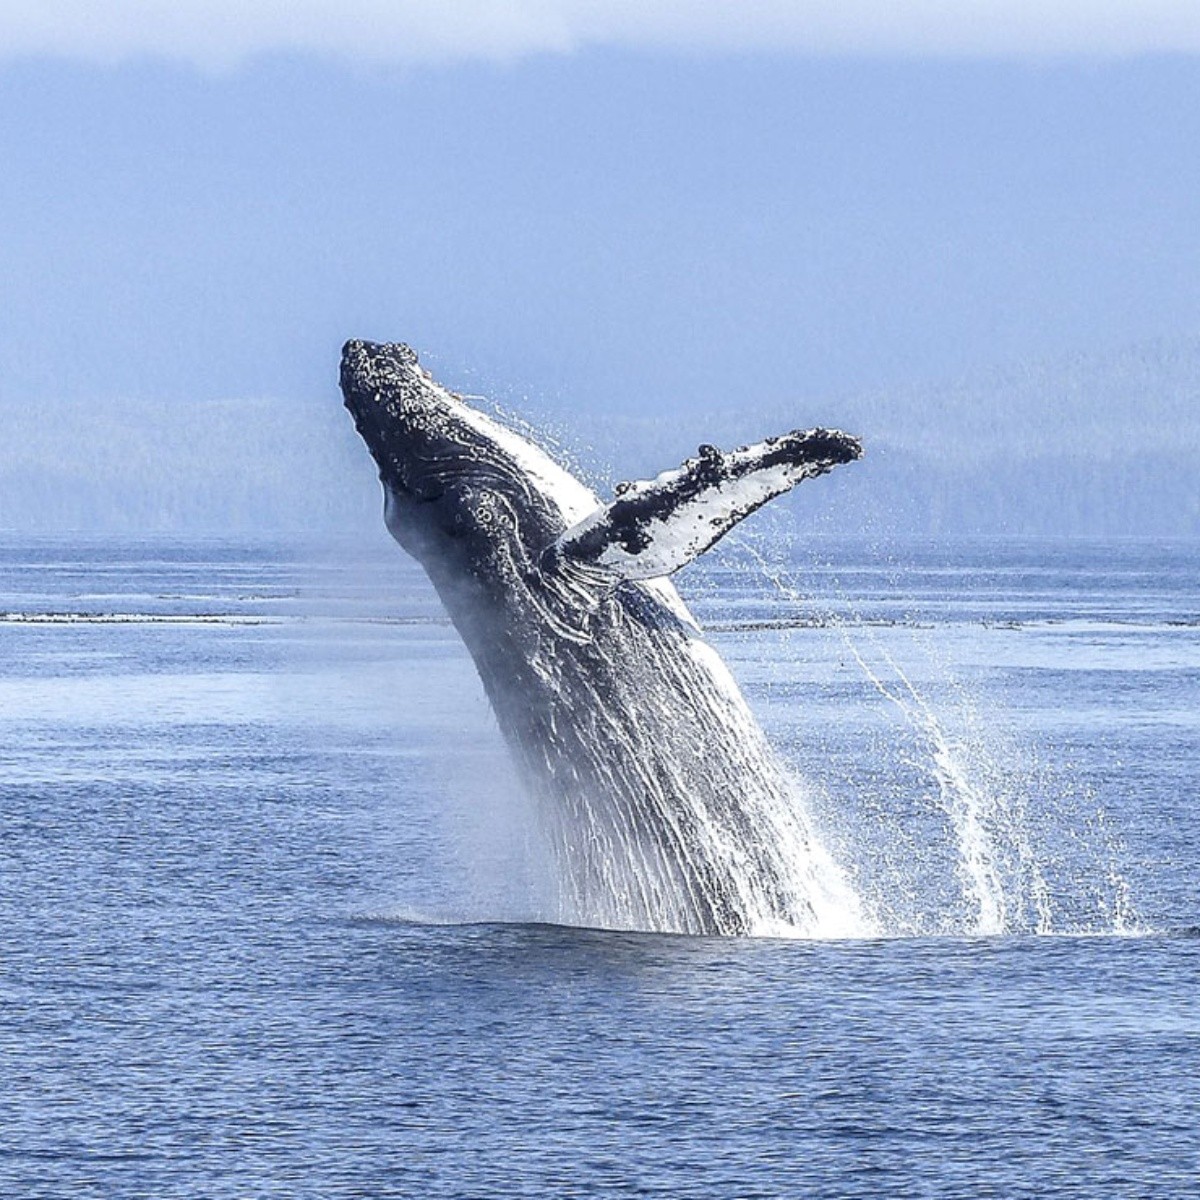 soñar con ballenas: ¿emoción, deseo o preocupación, o sabiduría, protección o conexión con la naturaleza?